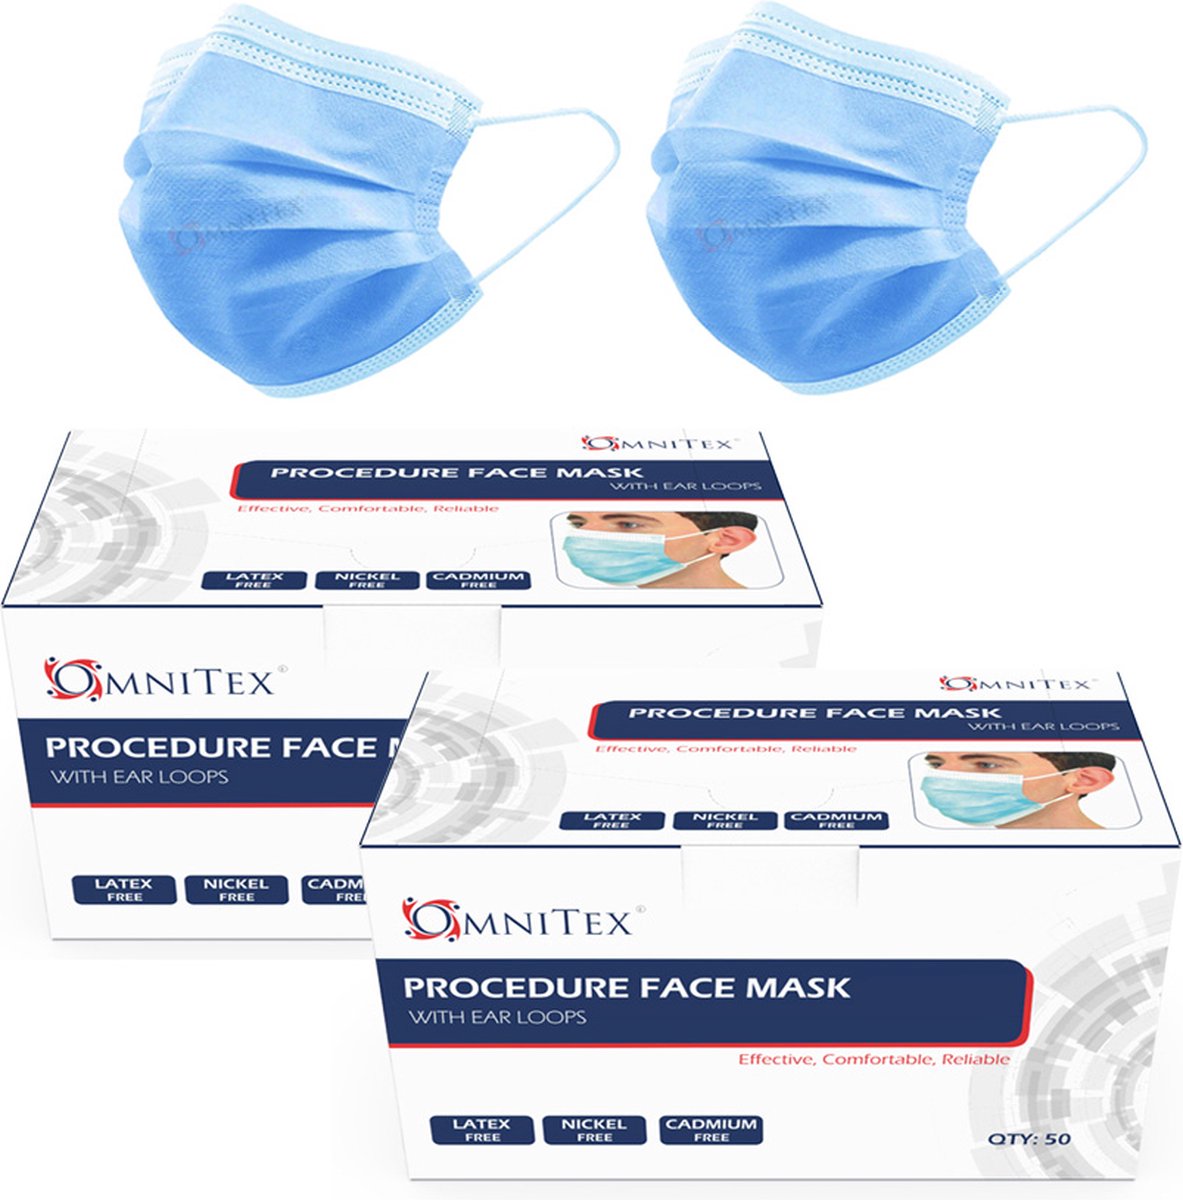 Omnitex Type IIR wegwerp medische mondkapjes met oorlussen | EN14683:2019 | 98% filtratie, vloeistofbestendig chirurgisch mondmaskers 2R - 3 laags masker - 100 stuks